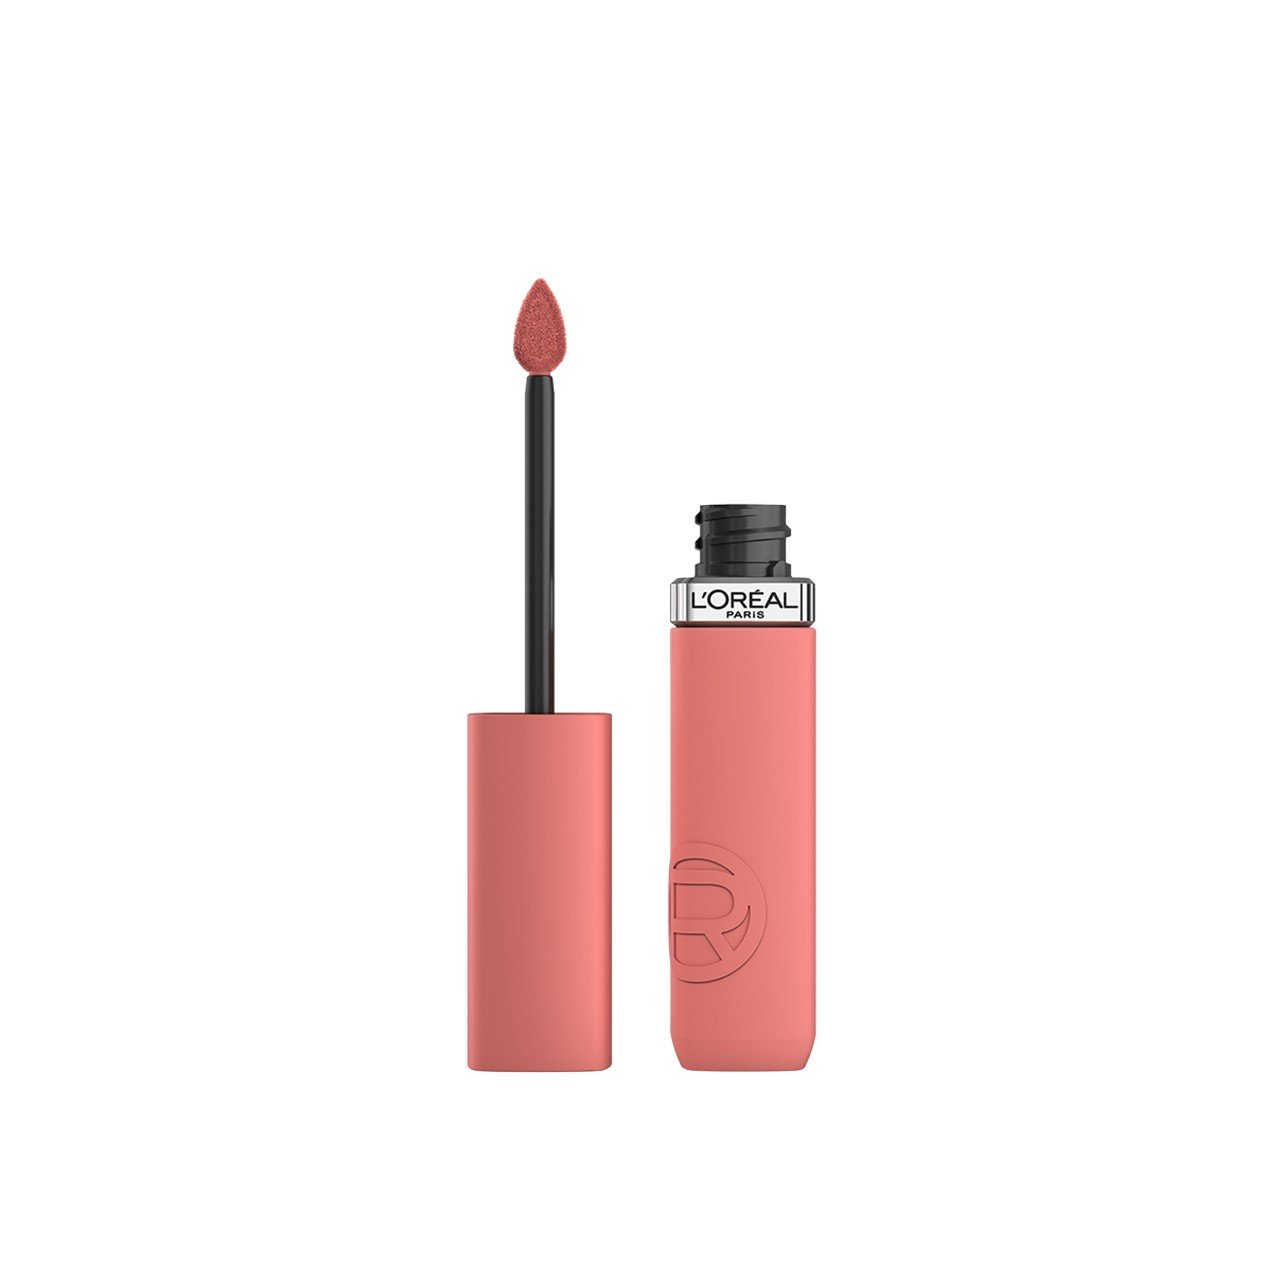 L'Oréal Paris Infallible Matte Resistance Liquid Lipstick 210 Tropical Vacay 5ml (0.17 fl oz)